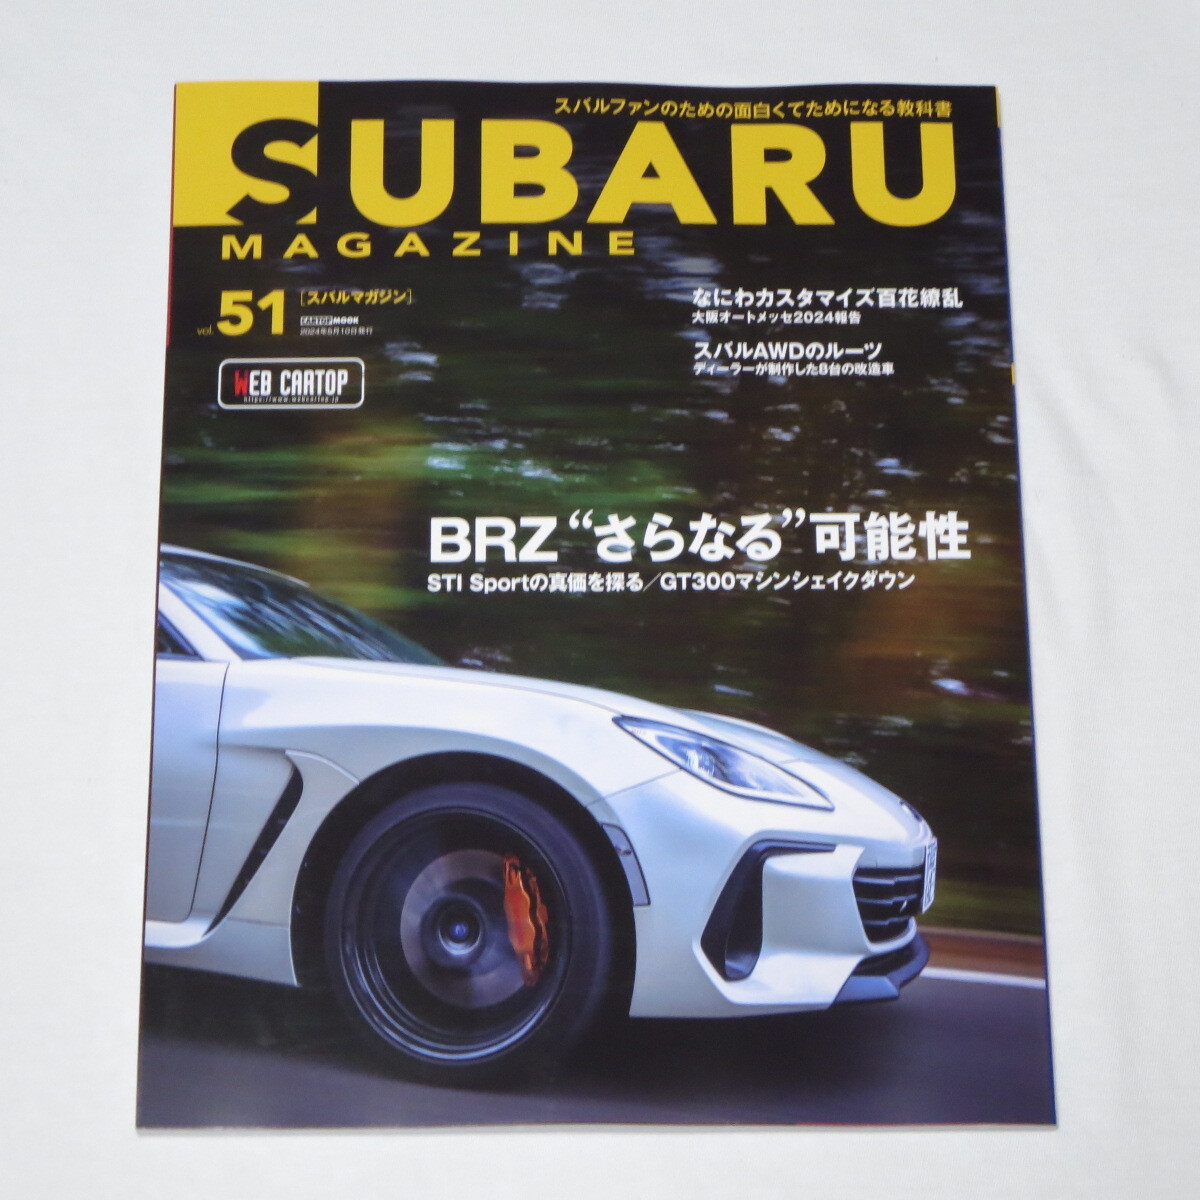 スバルマガジン SUBARU MAGAZINE Vol.51 (CARTOP MOOK)の画像1